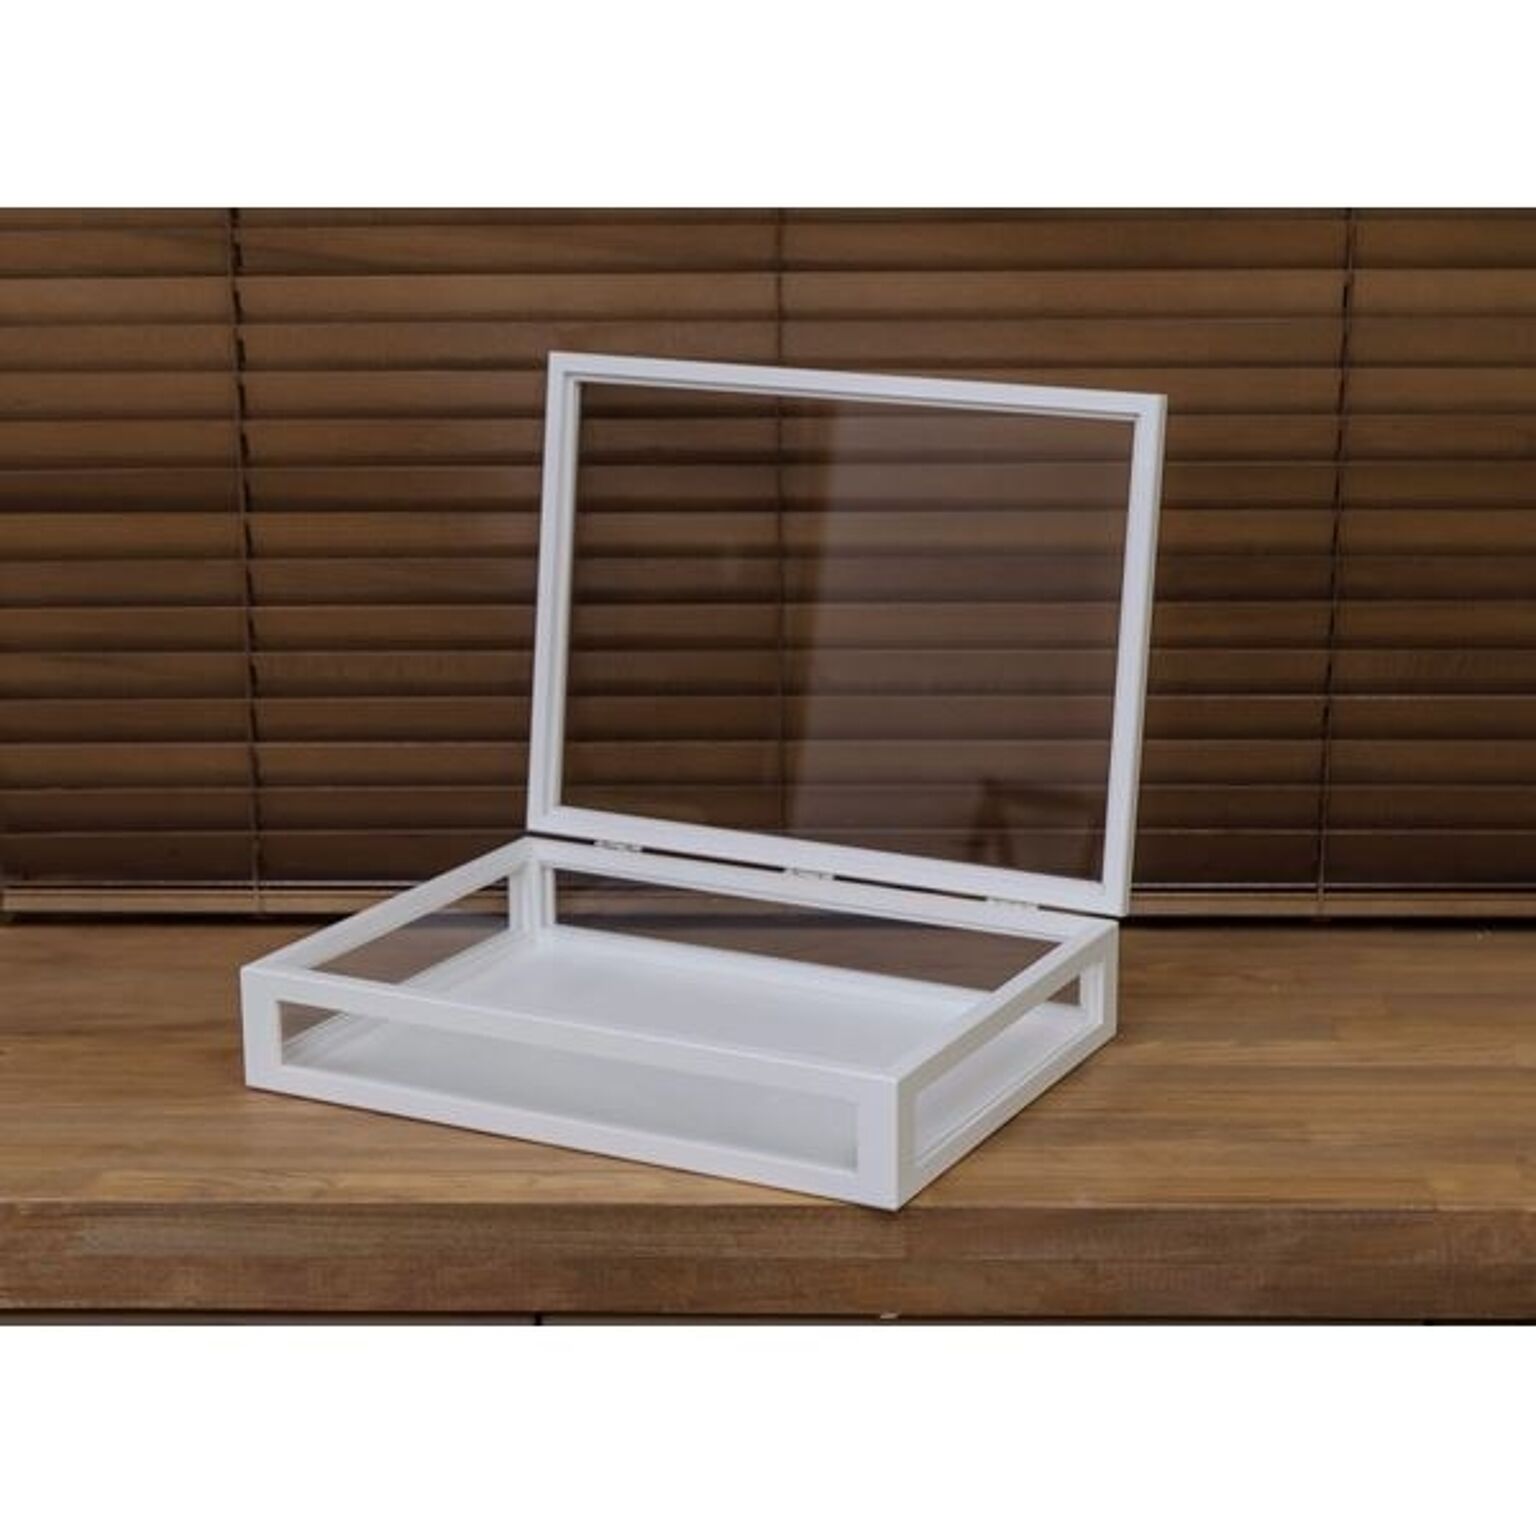 コレクションケース/ディスプレイケース 単品 【大】 幅40cm 木製フレーム ガラス製 ホワイト(白) 【完成品】